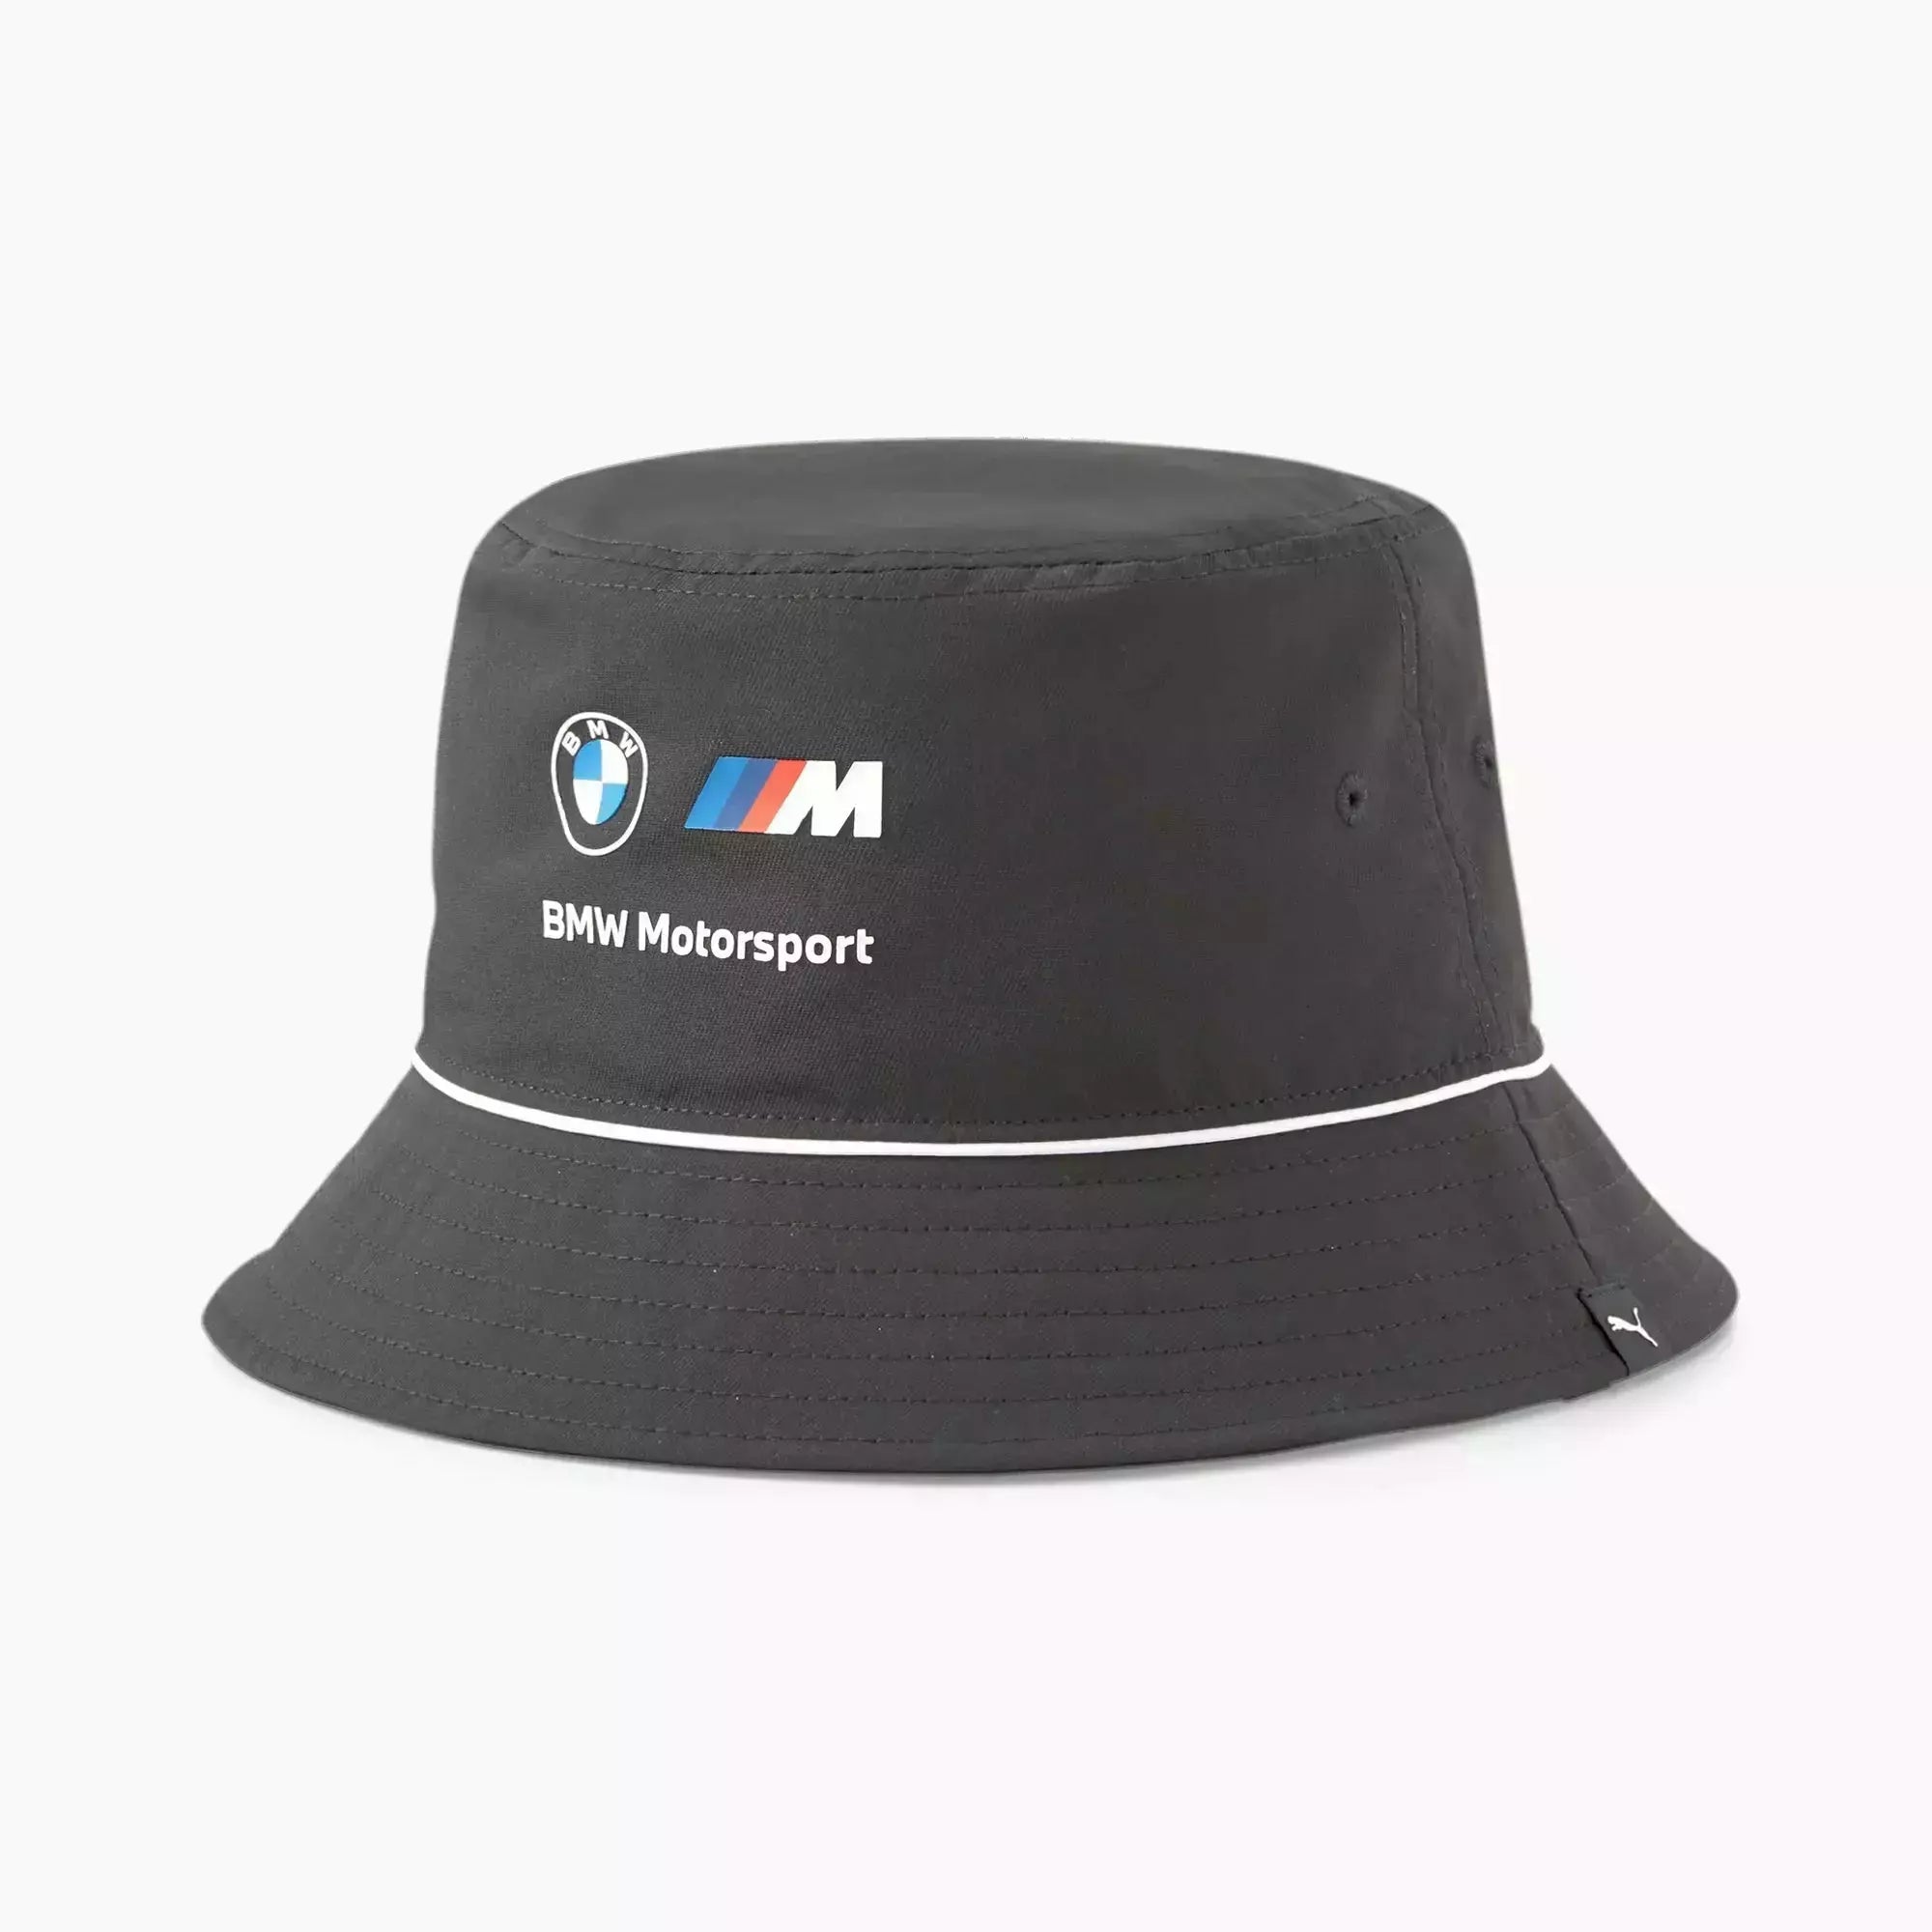 Puma BMW M Motorsport Bucket Hat, Black, L/XL